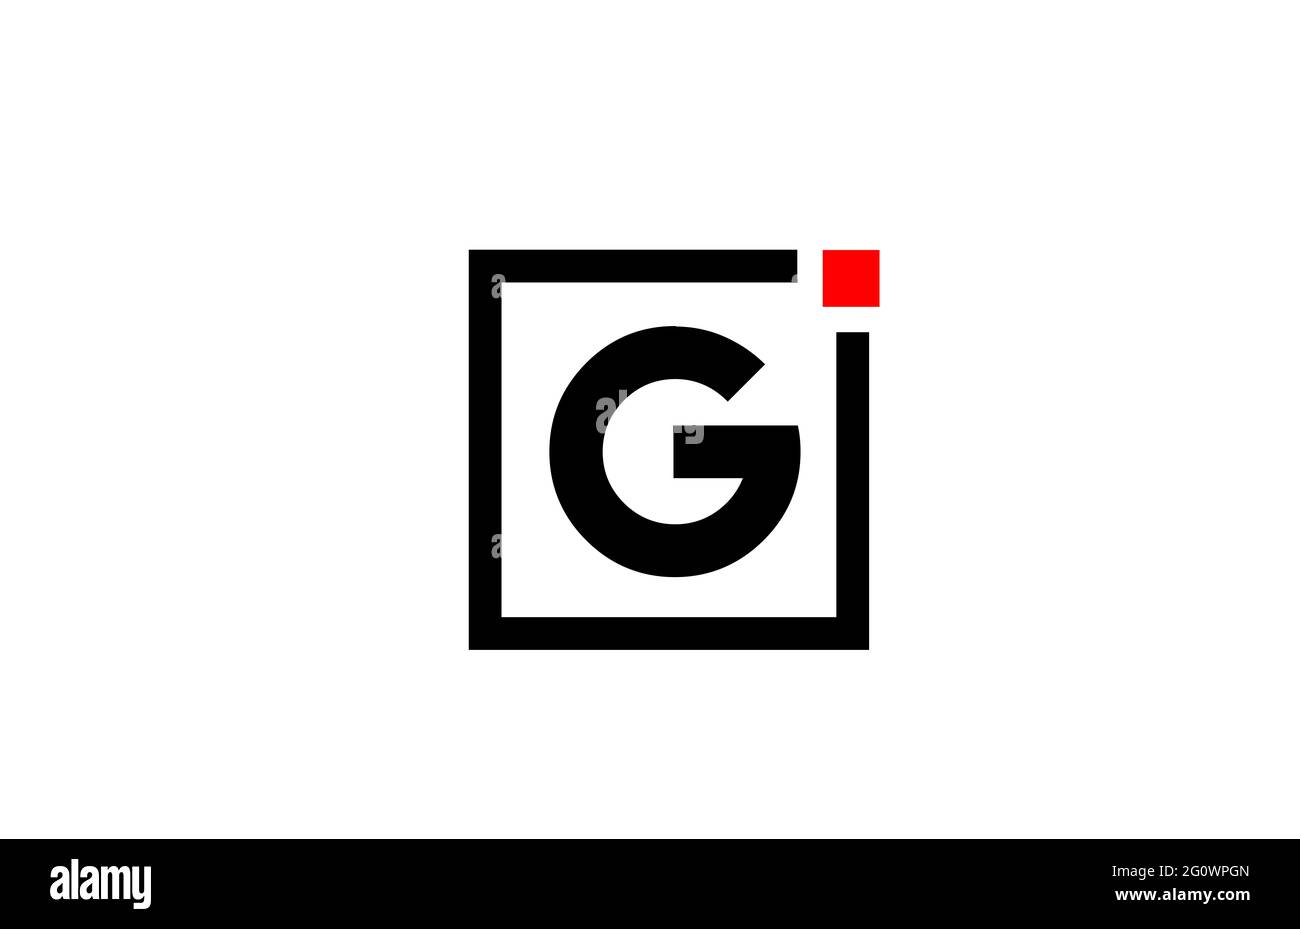 Logo dell'icona lettera dell'alfabeto G in bianco e nero. Design aziendale e aziendale con punto quadrato e rosso. Modello di identità aziendale creativa Foto Stock